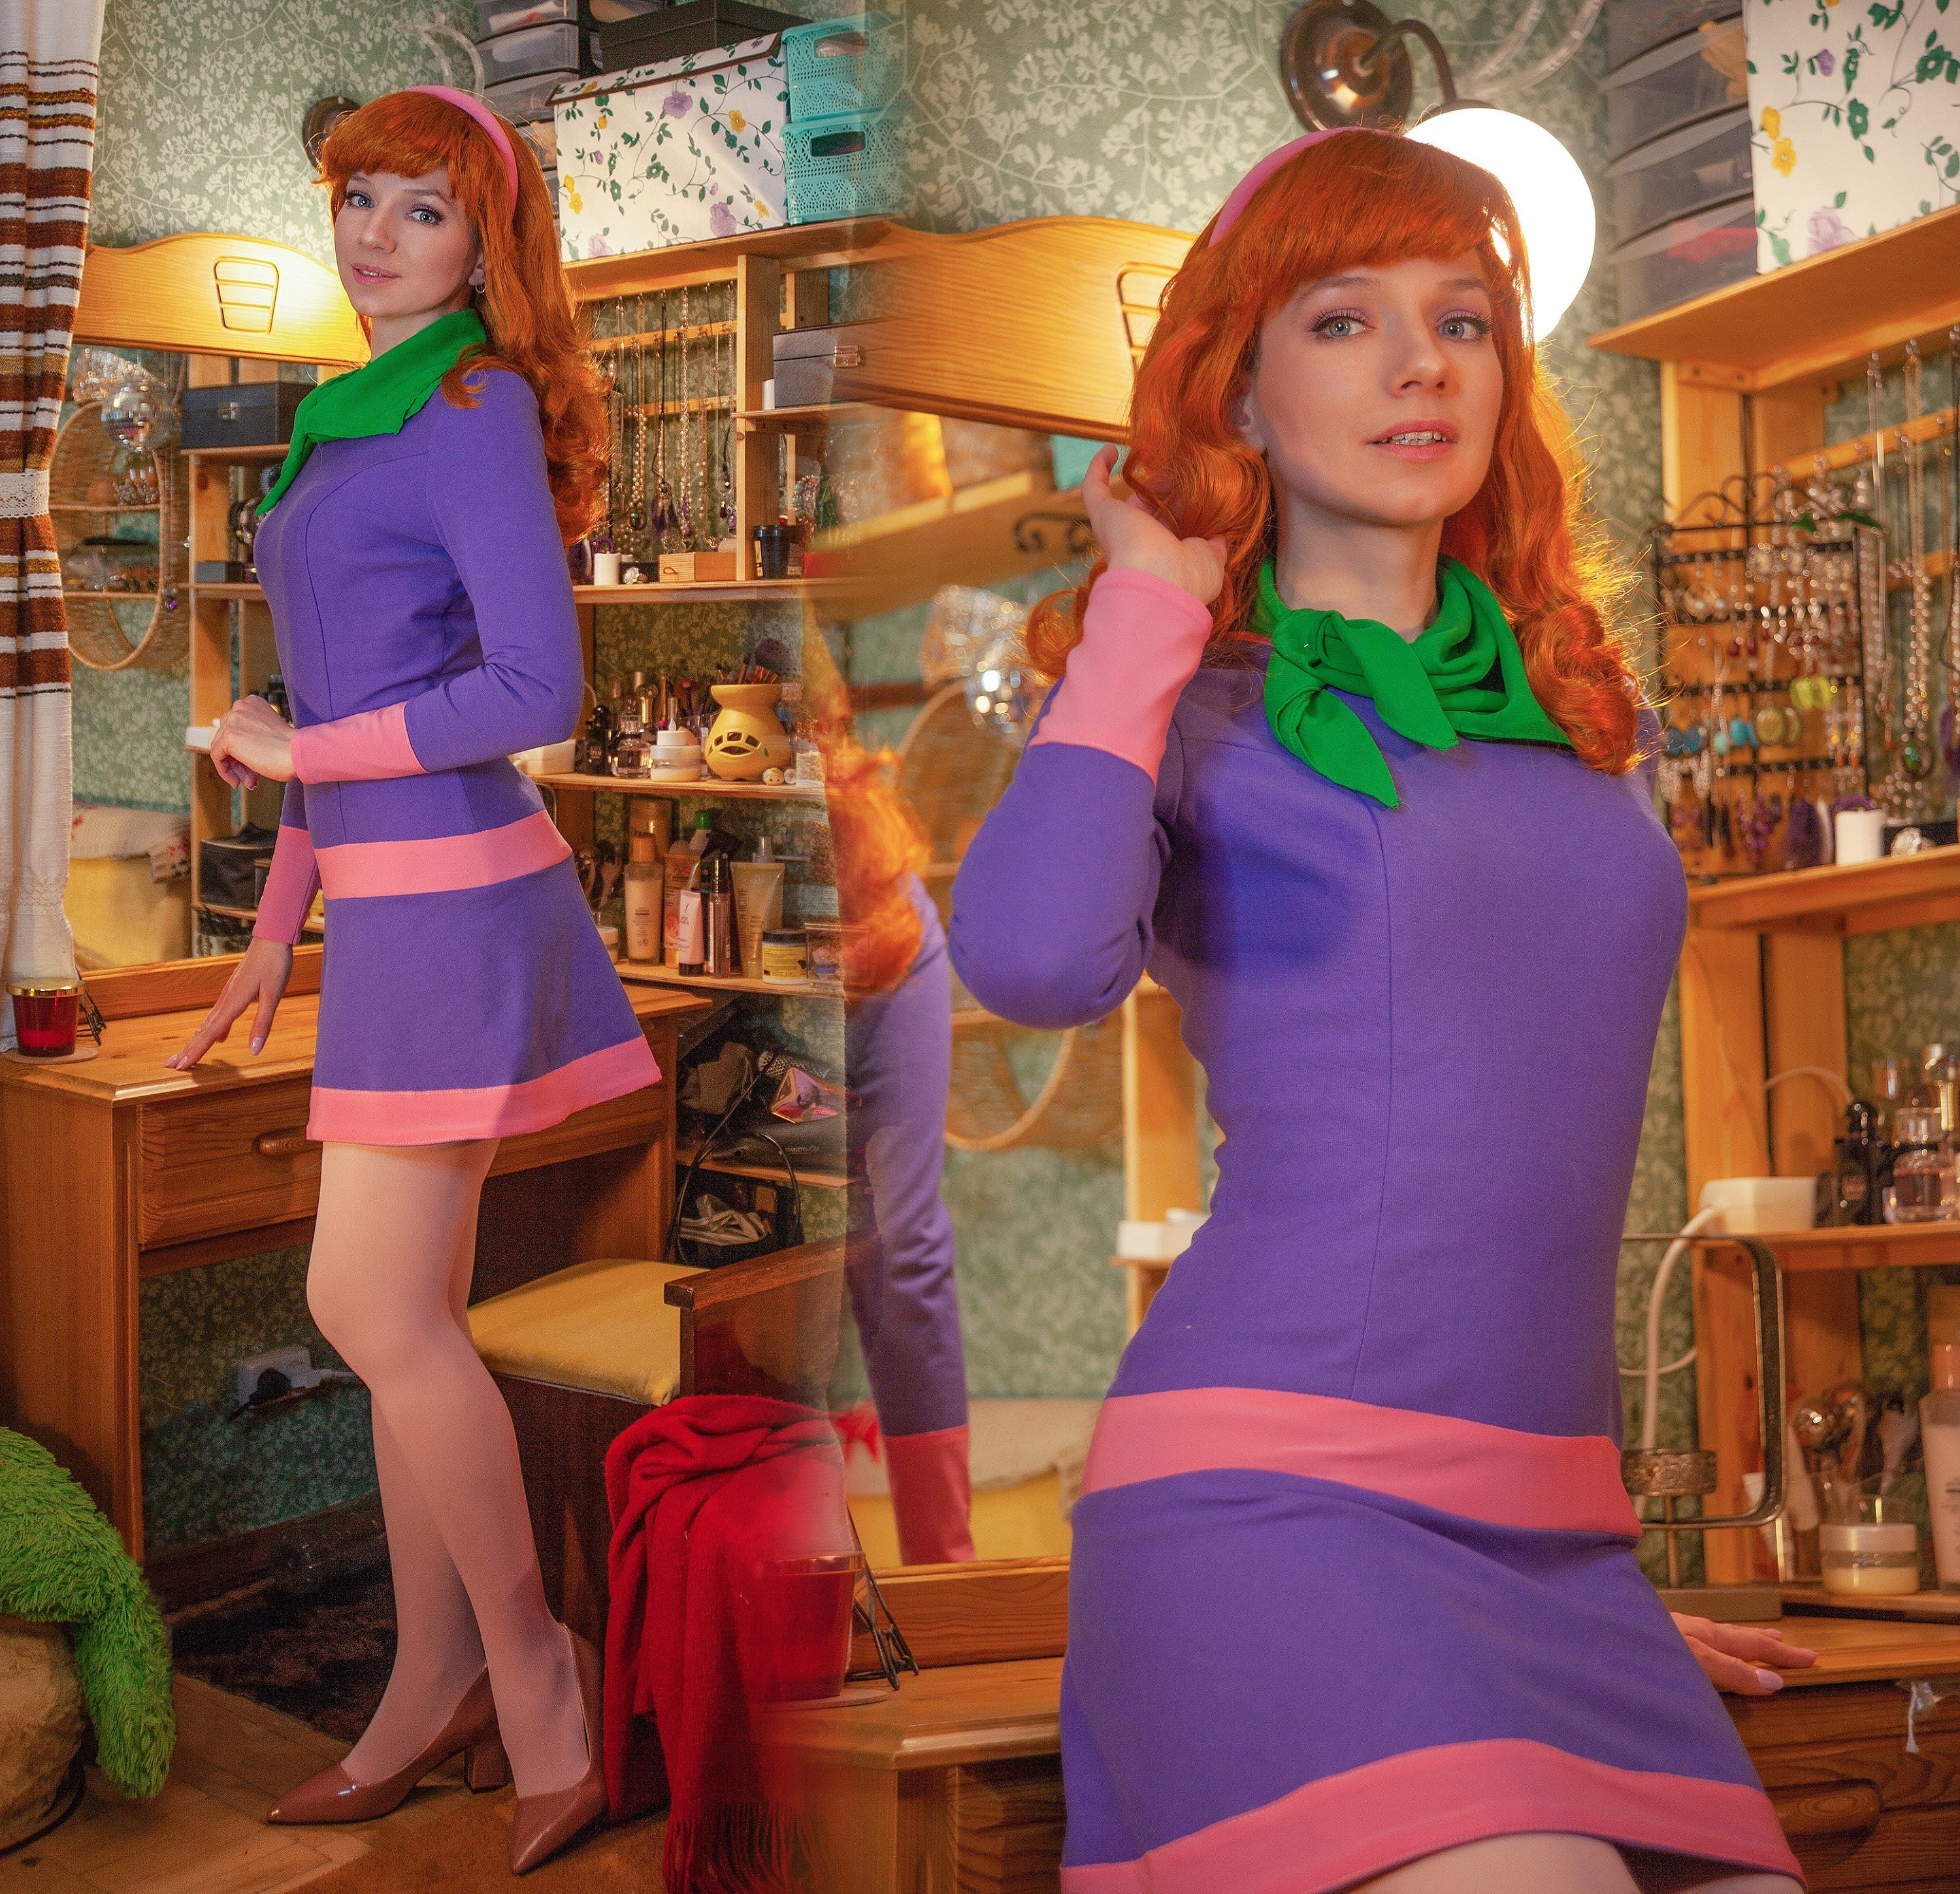  Digfar Girls Velma Costume Daphn Cosplay Scoob